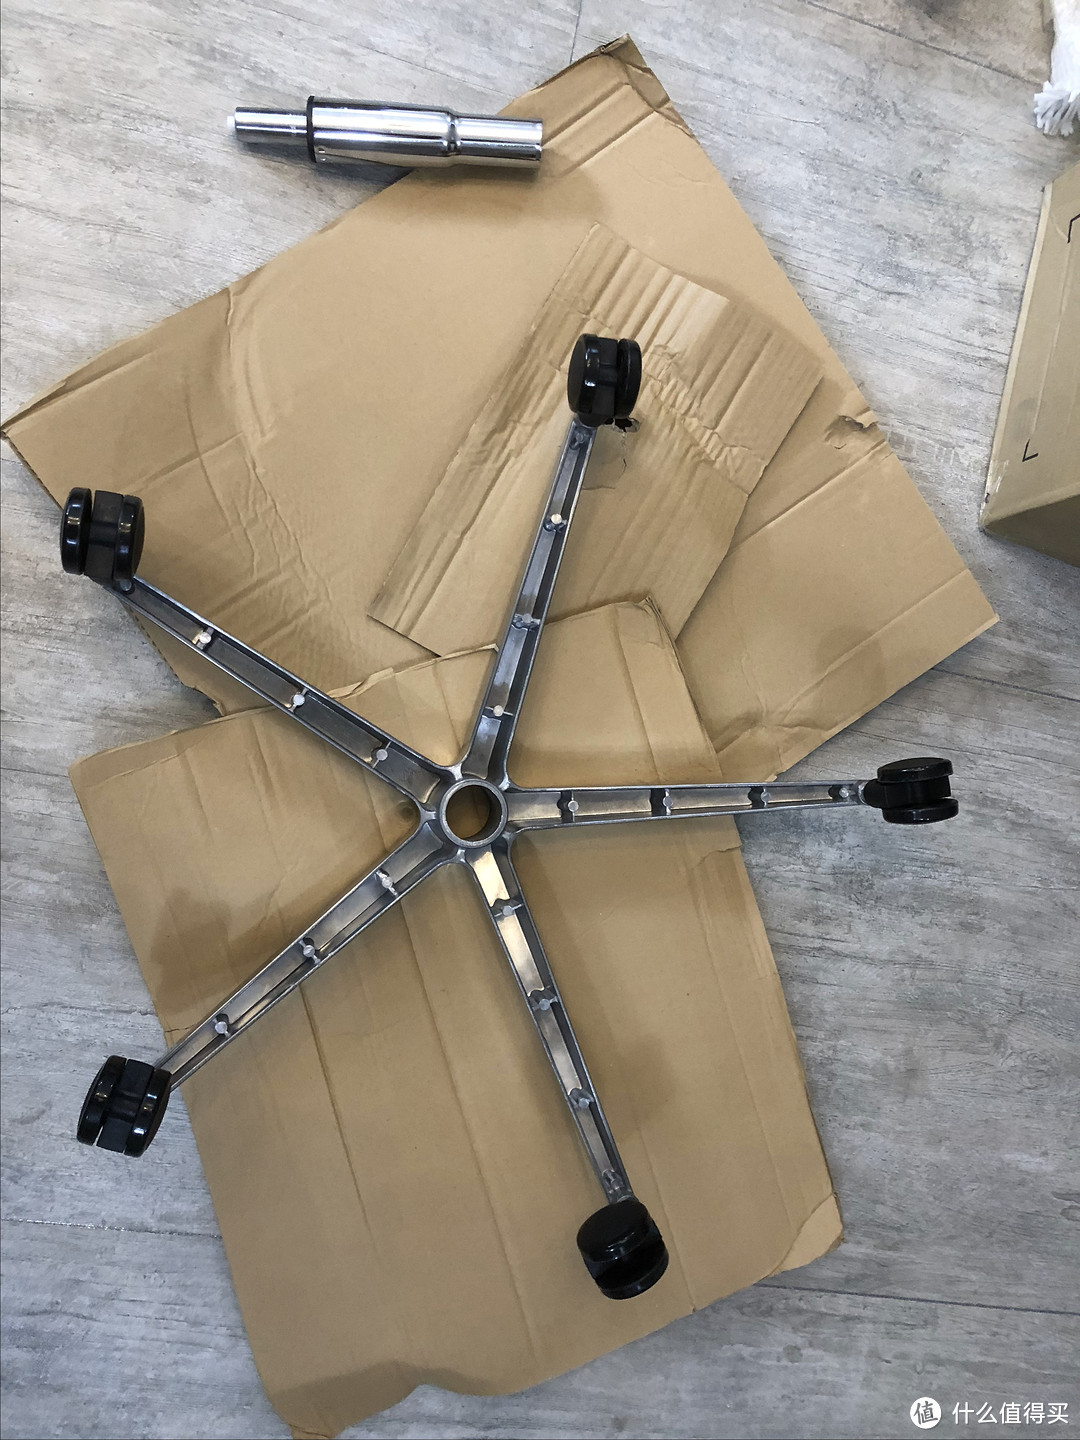 千元级人体工学椅—HBADA 黑白调 HDNY140 开箱安装晒物